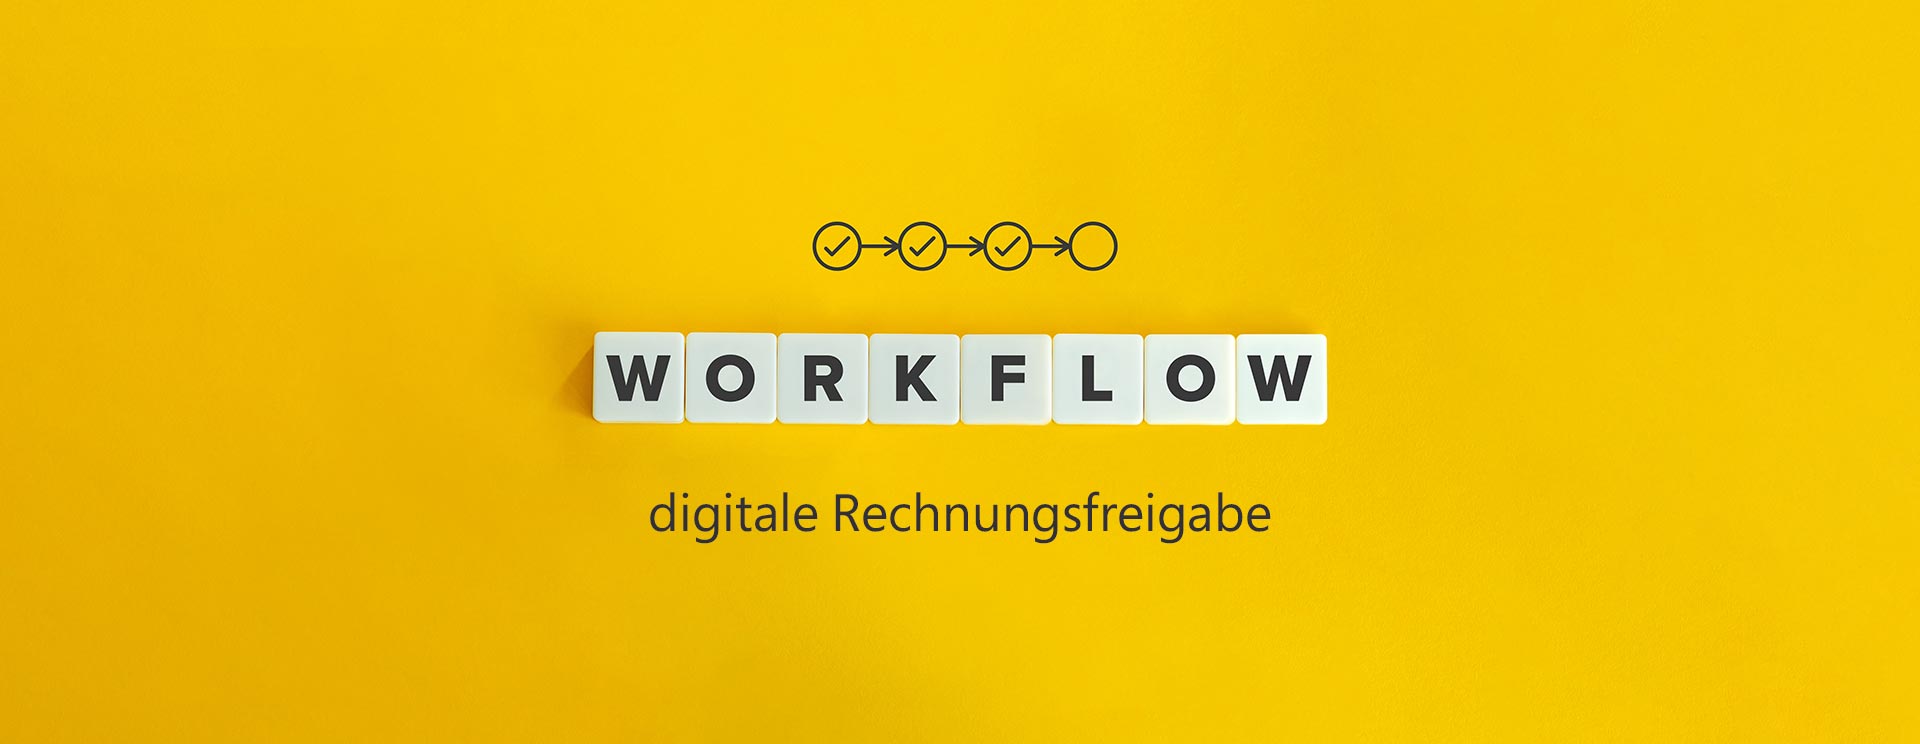 Logist.AI Workflow mit digitaler Rechnungsfreigabe